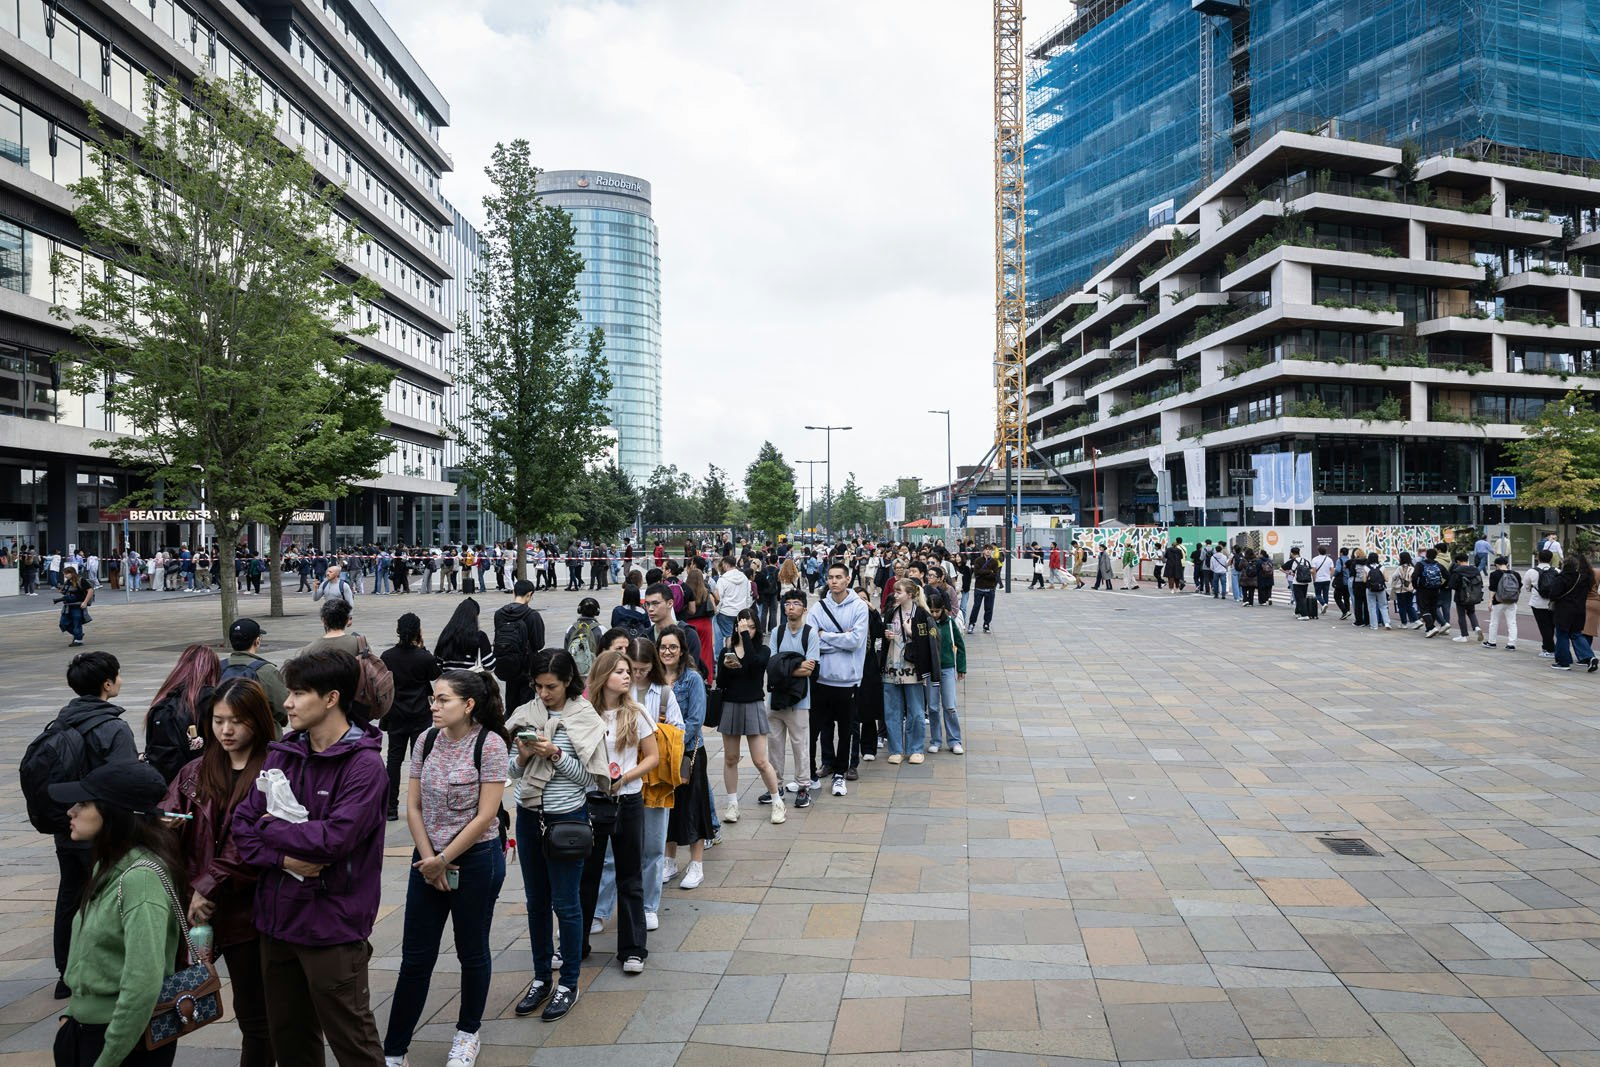 Des milliers d’étudiants internationaux font la queue devant le bâtiment Beatrix à Utrecht pour obtenir un permis de séjour